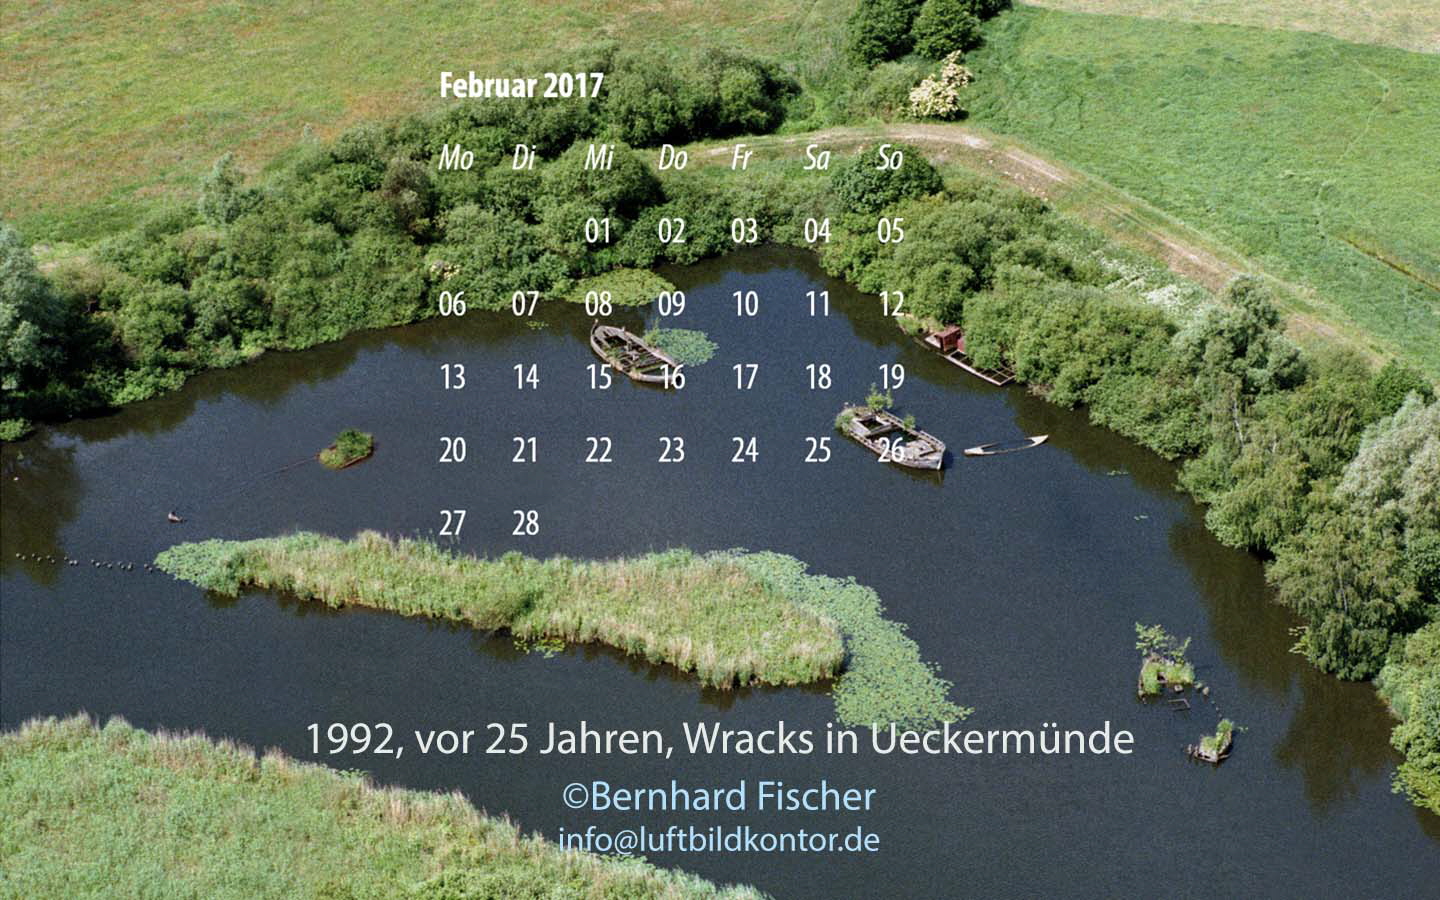 vor 25 Jahren, Wracks, Ueckermuende, Luftbild B. Fischer, Februar 2017